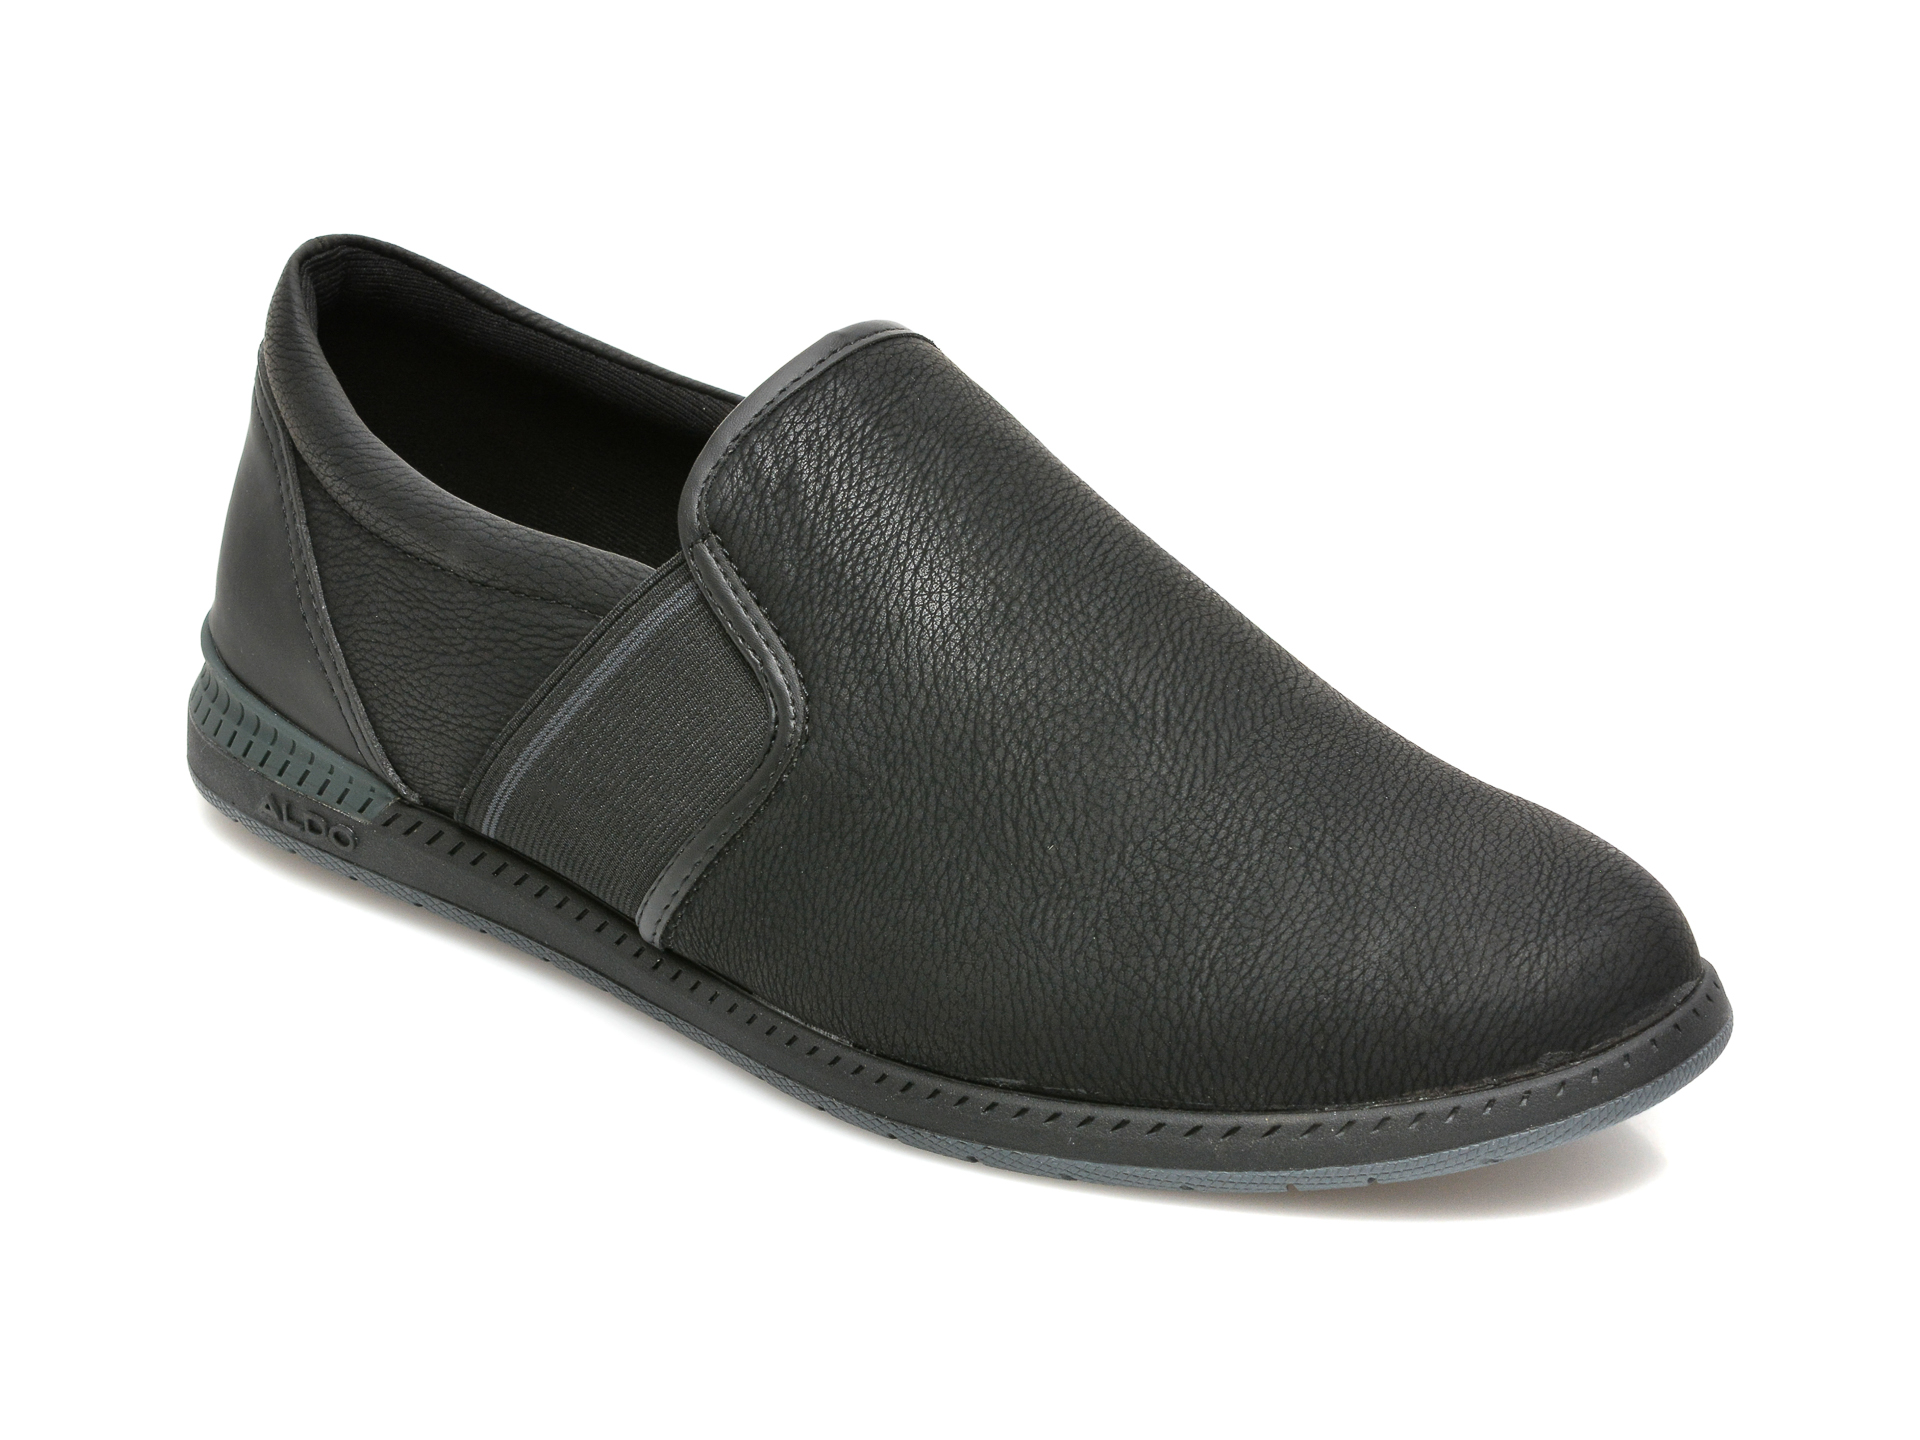 Pantofi ALDO negri, DAVIT001, din piele ecologica Aldo imagine reduceri